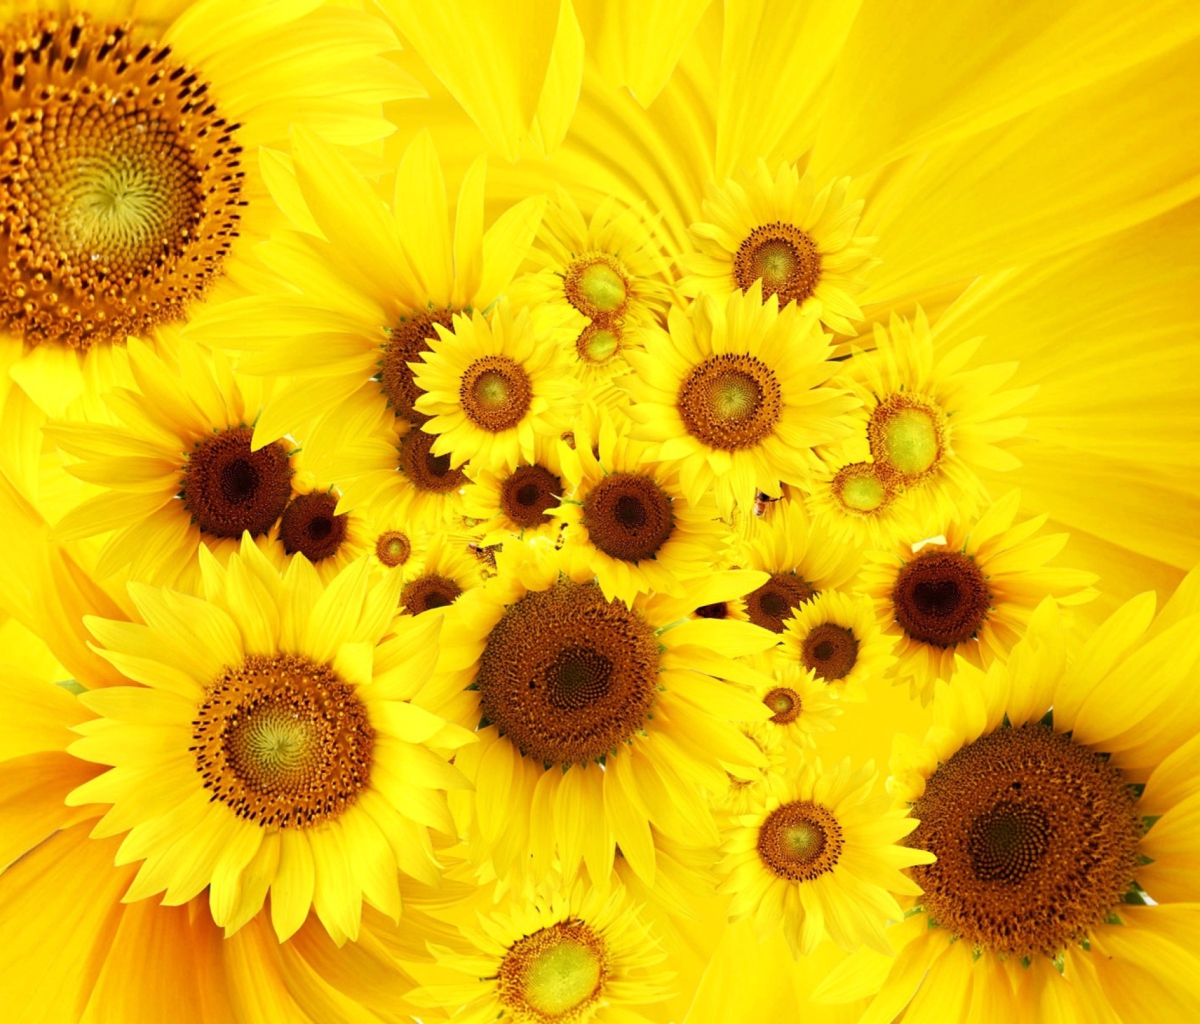 Cool Sunflowers wallpaper 1200x1024